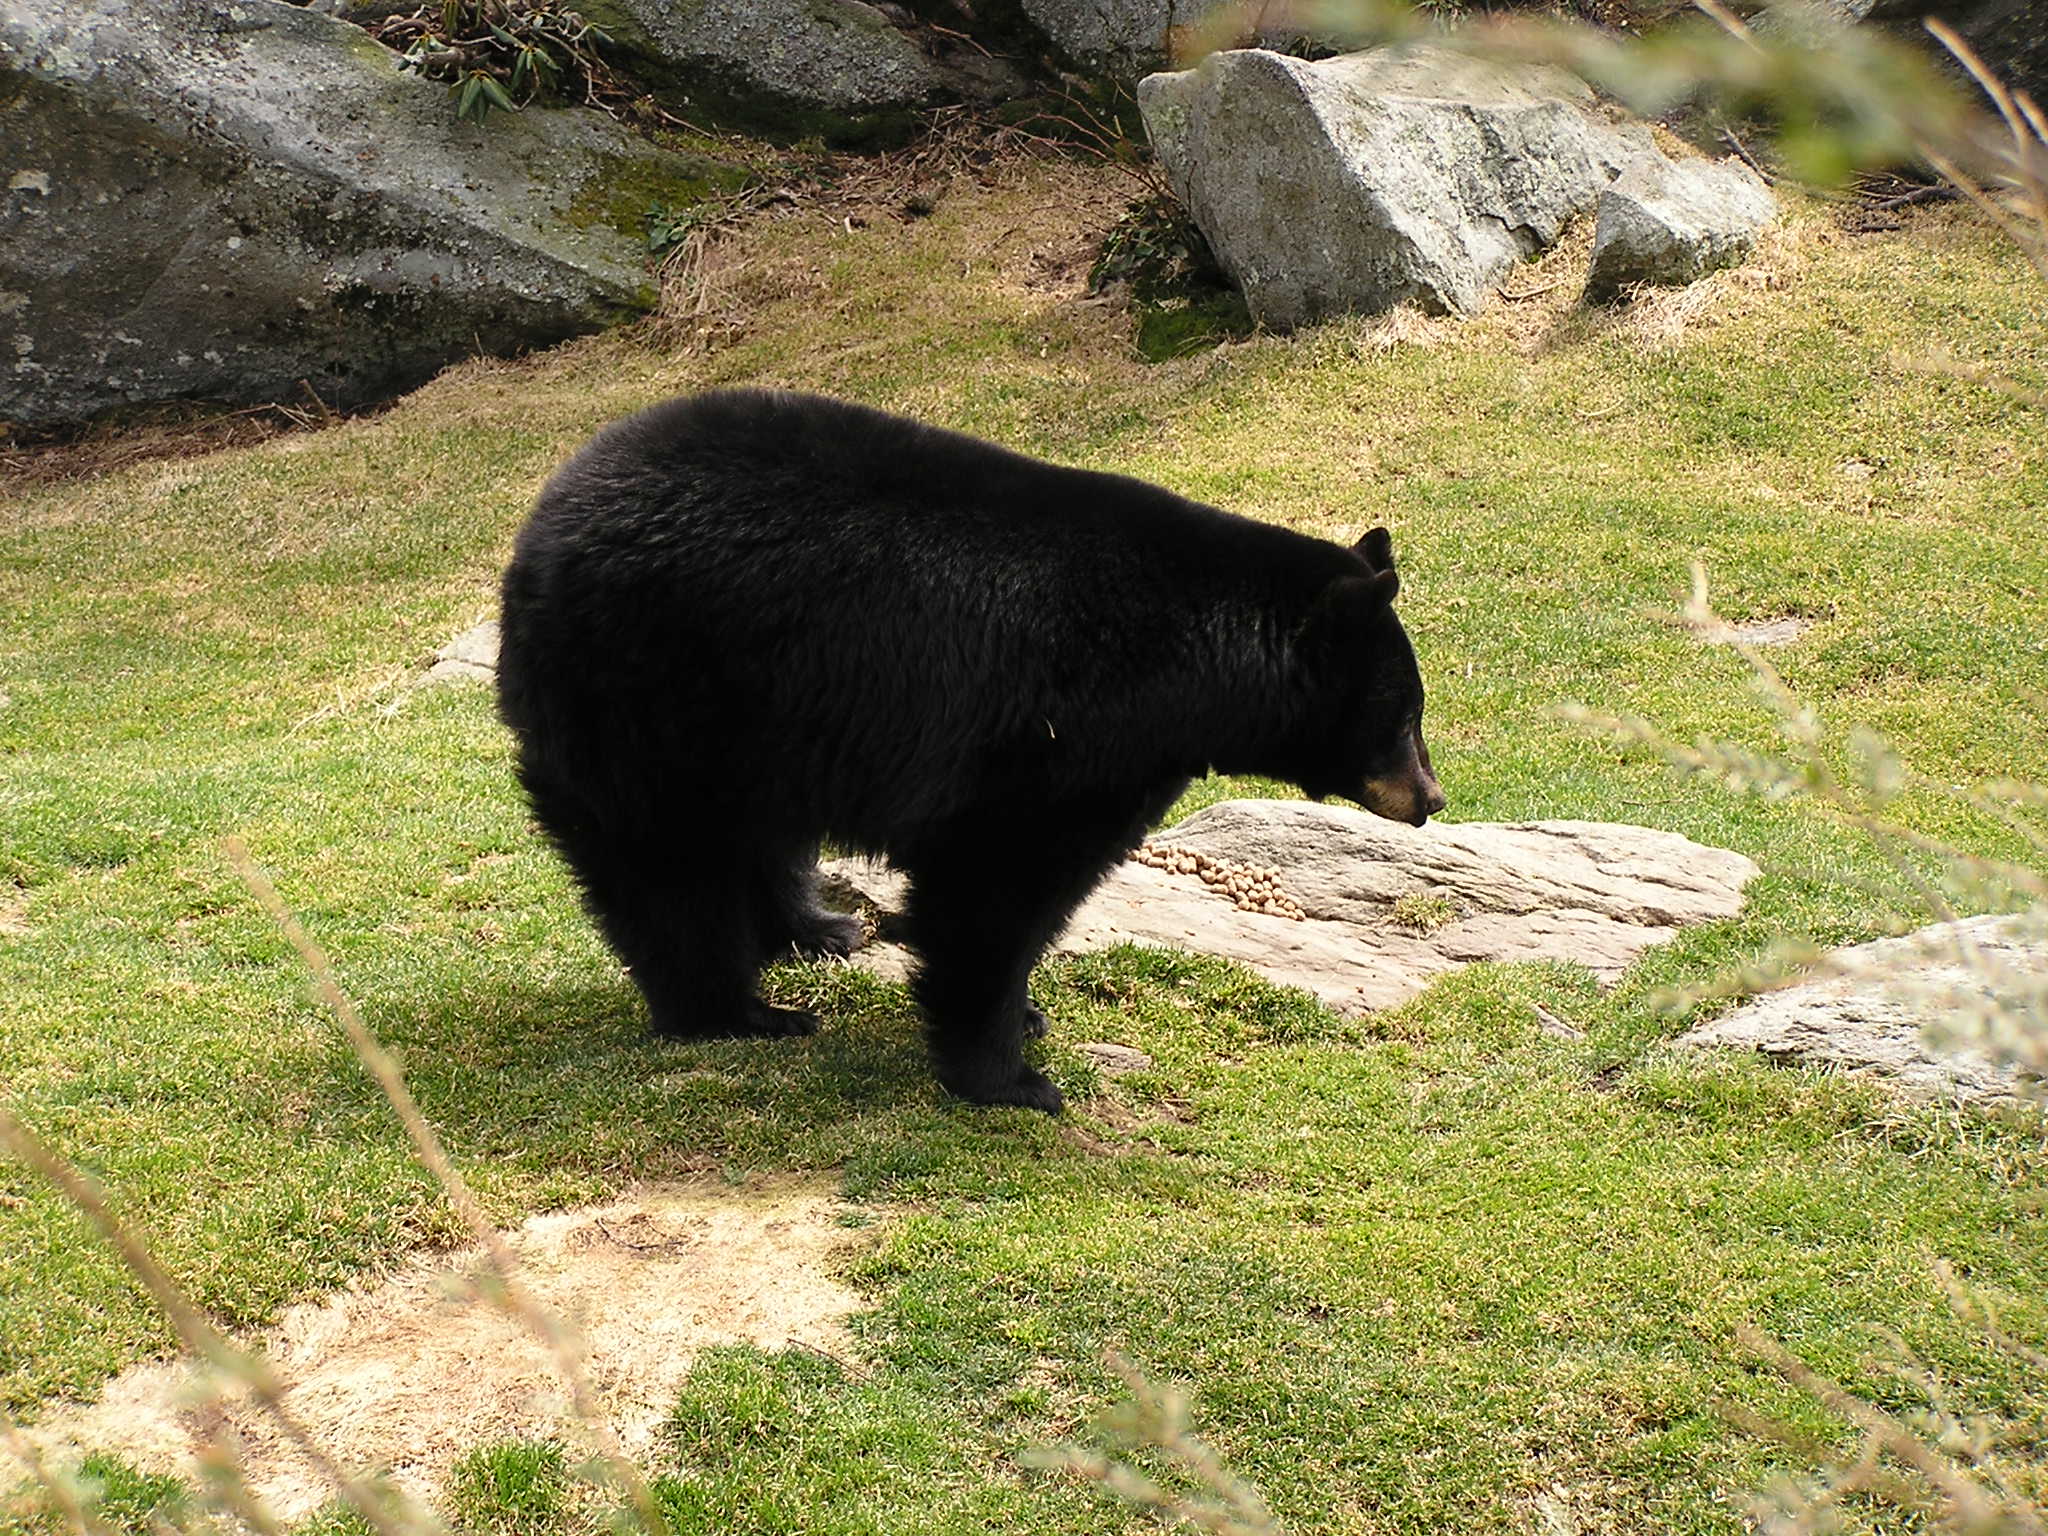 Bear Den at Grandfather Mountain